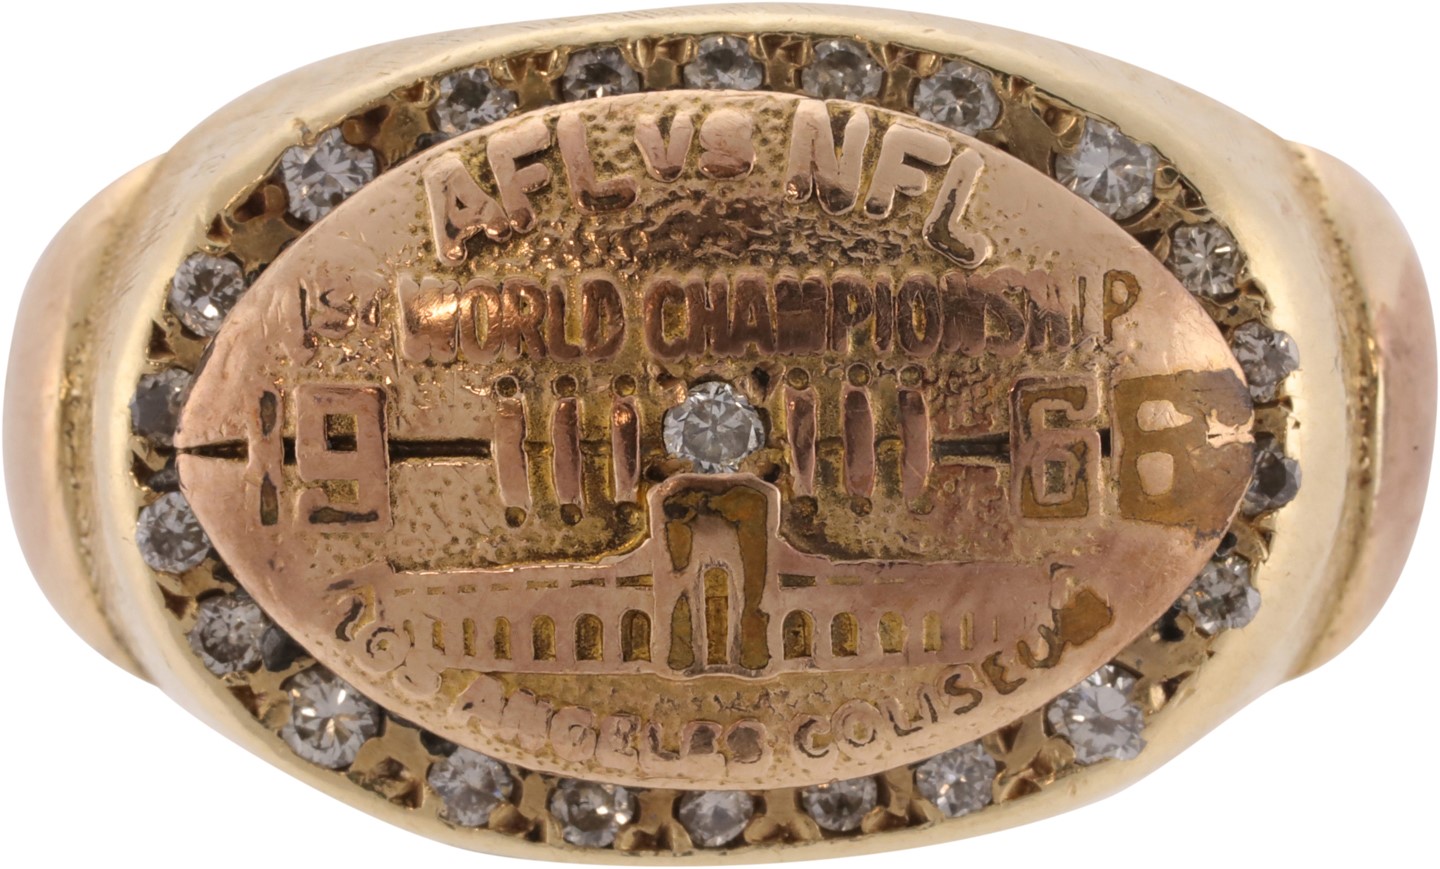 - AFL vs. NFL First World Championship Super Bowl I Ring